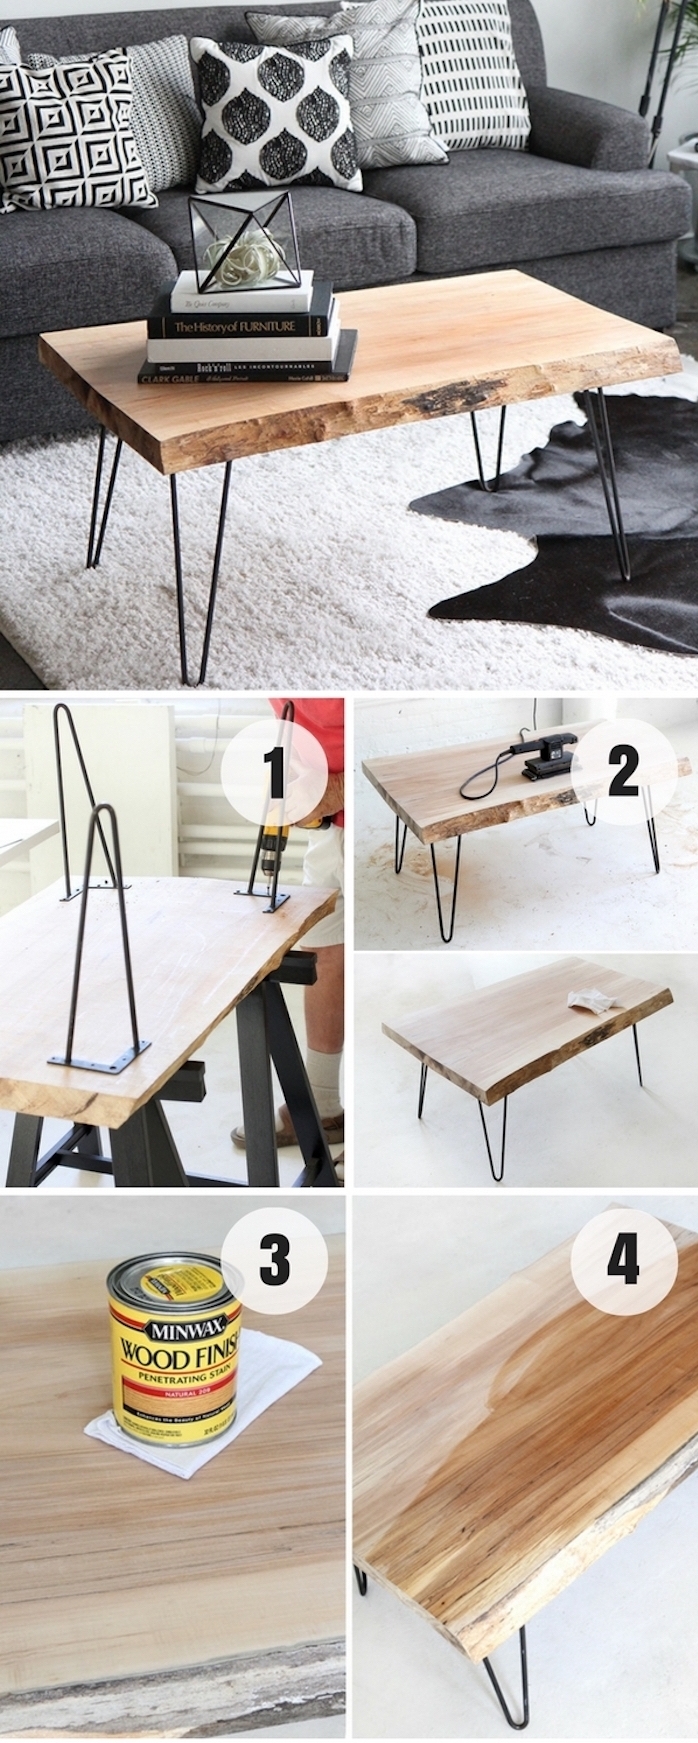 idée comment fabriquer table basse bois brut avec des pieds en epingle a cheveux, canapé gris et coussins gris, noir et blanc